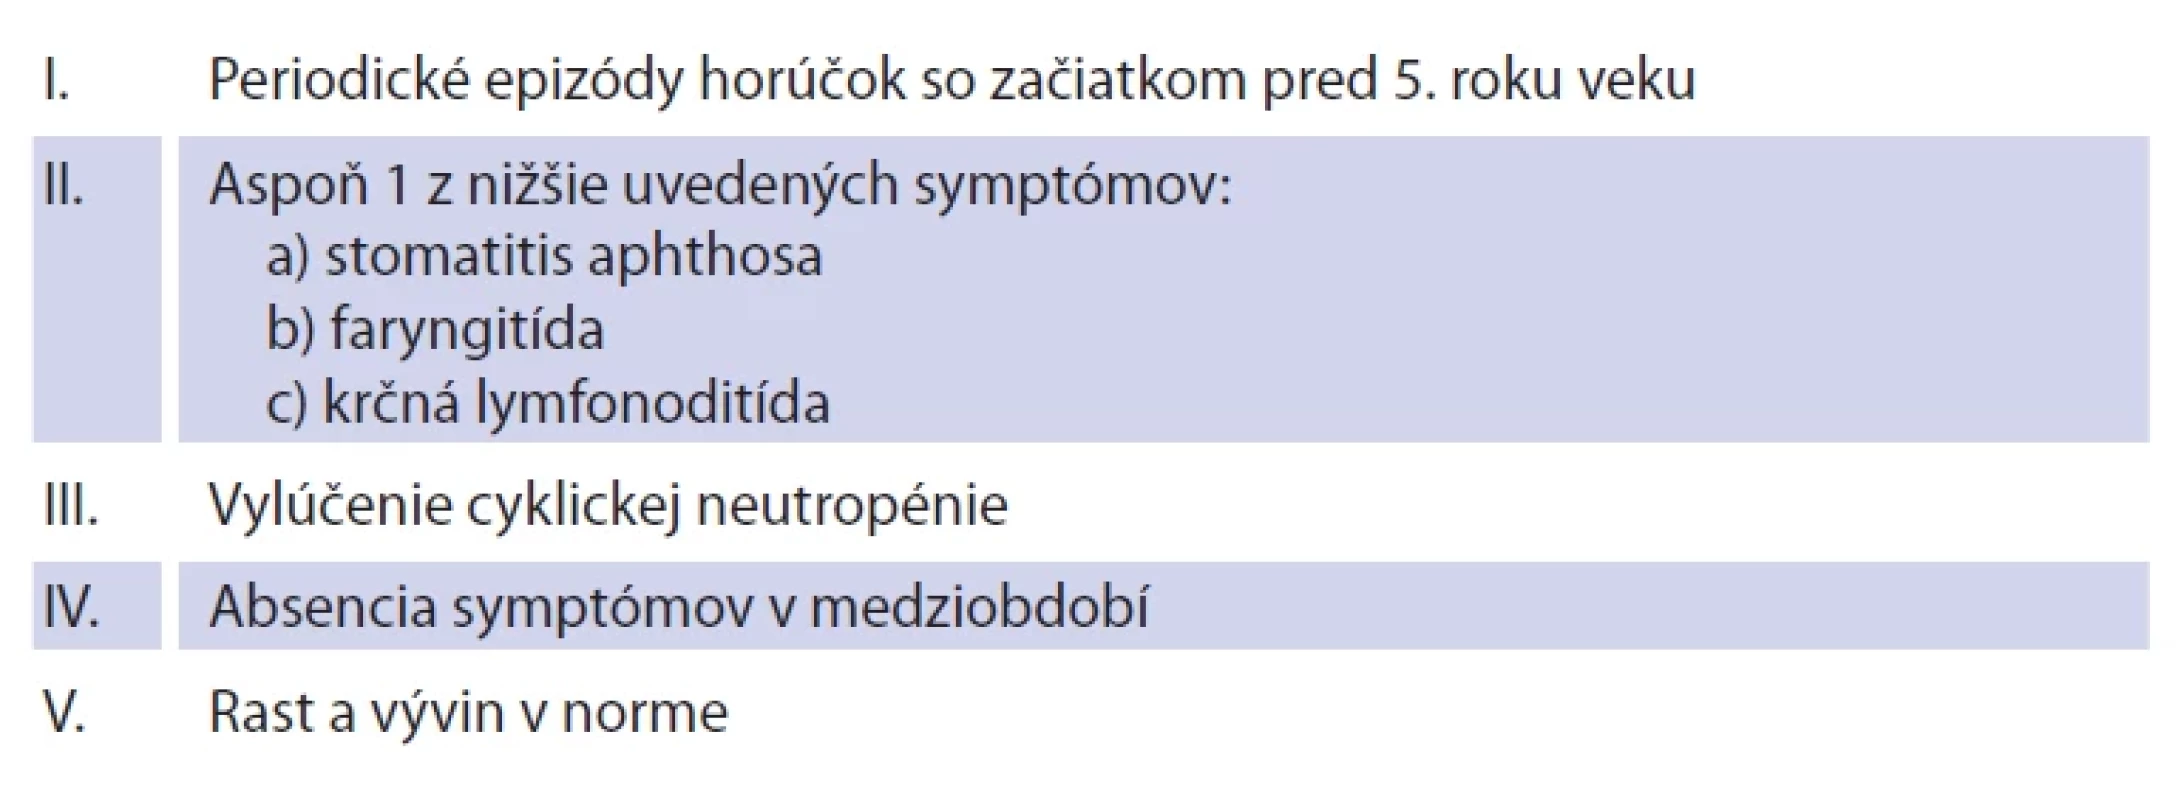 Diagnostické kritériá PFAPA sy podľa Oliveira [14].